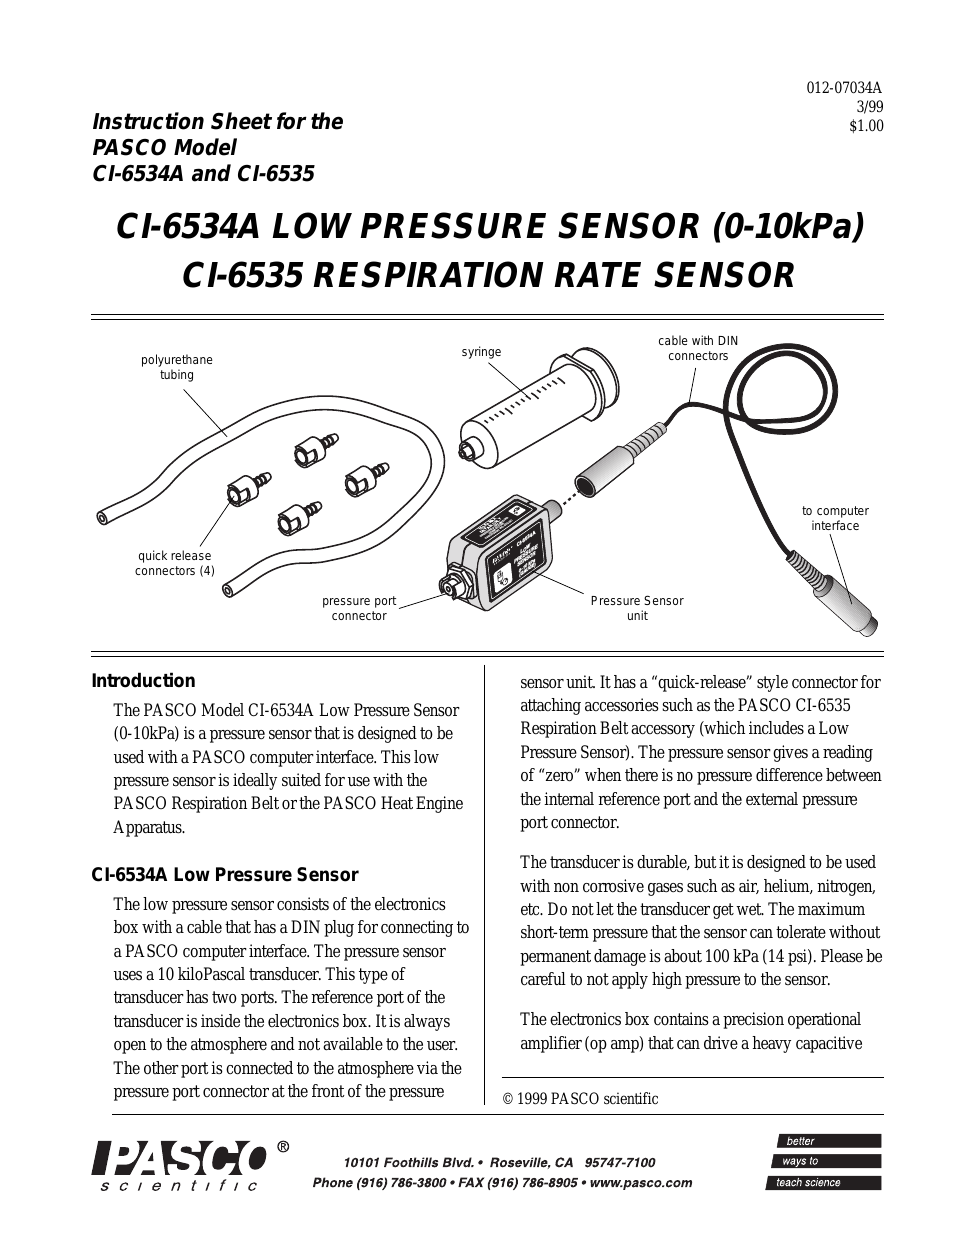 CI-6534A LOW PRESSURE SENSOR